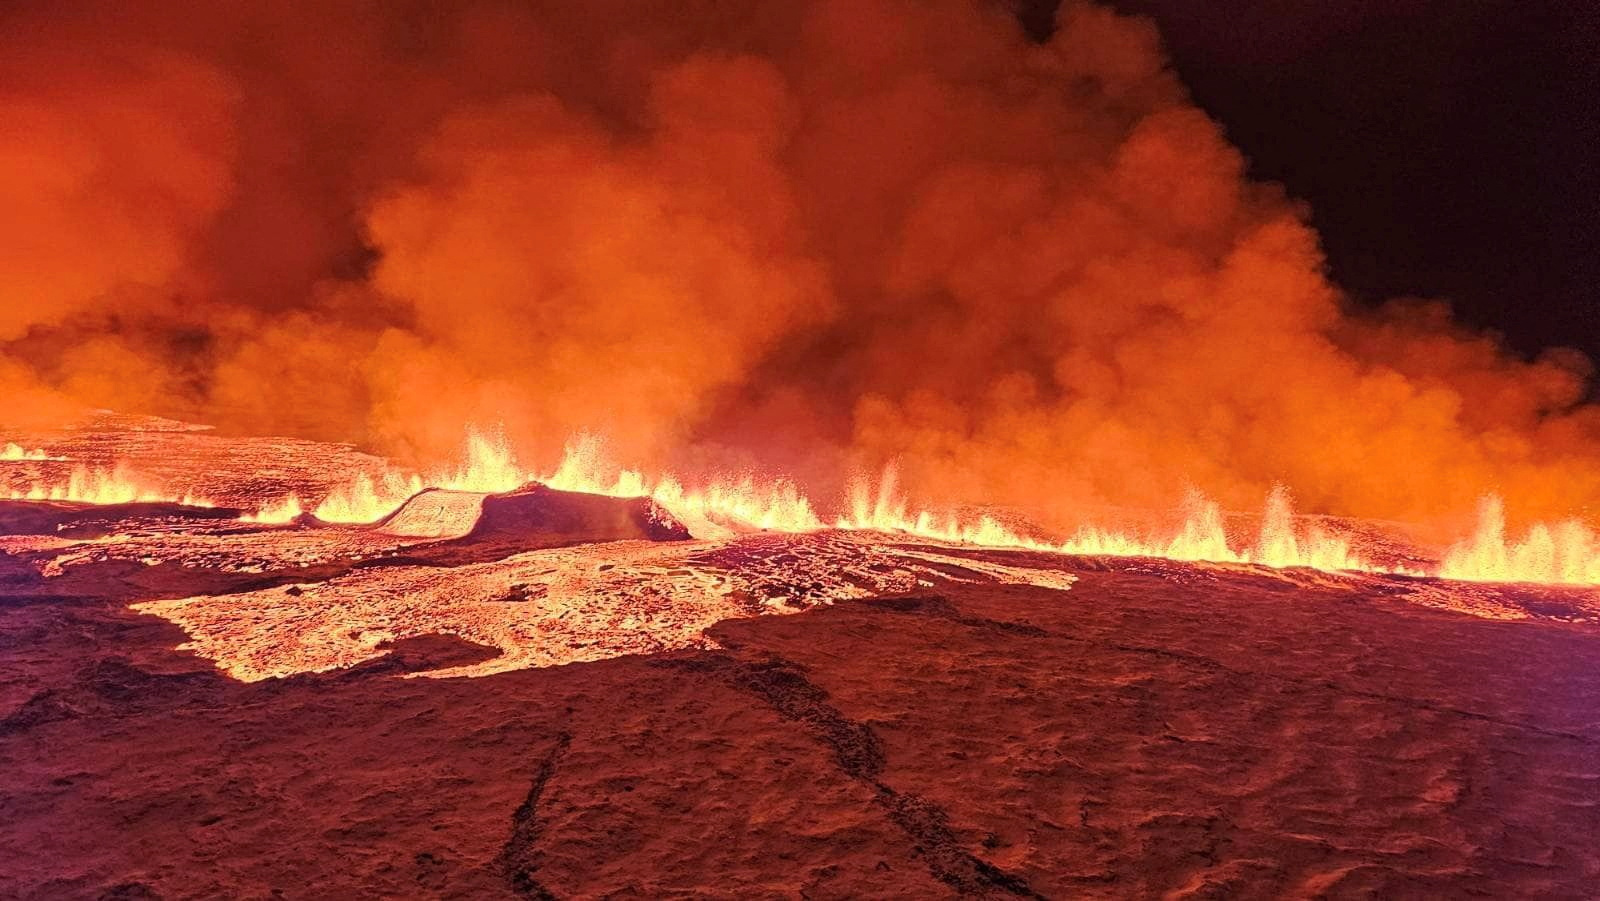 冰岛火山爆发酿空污 火山灰弥漫城镇 